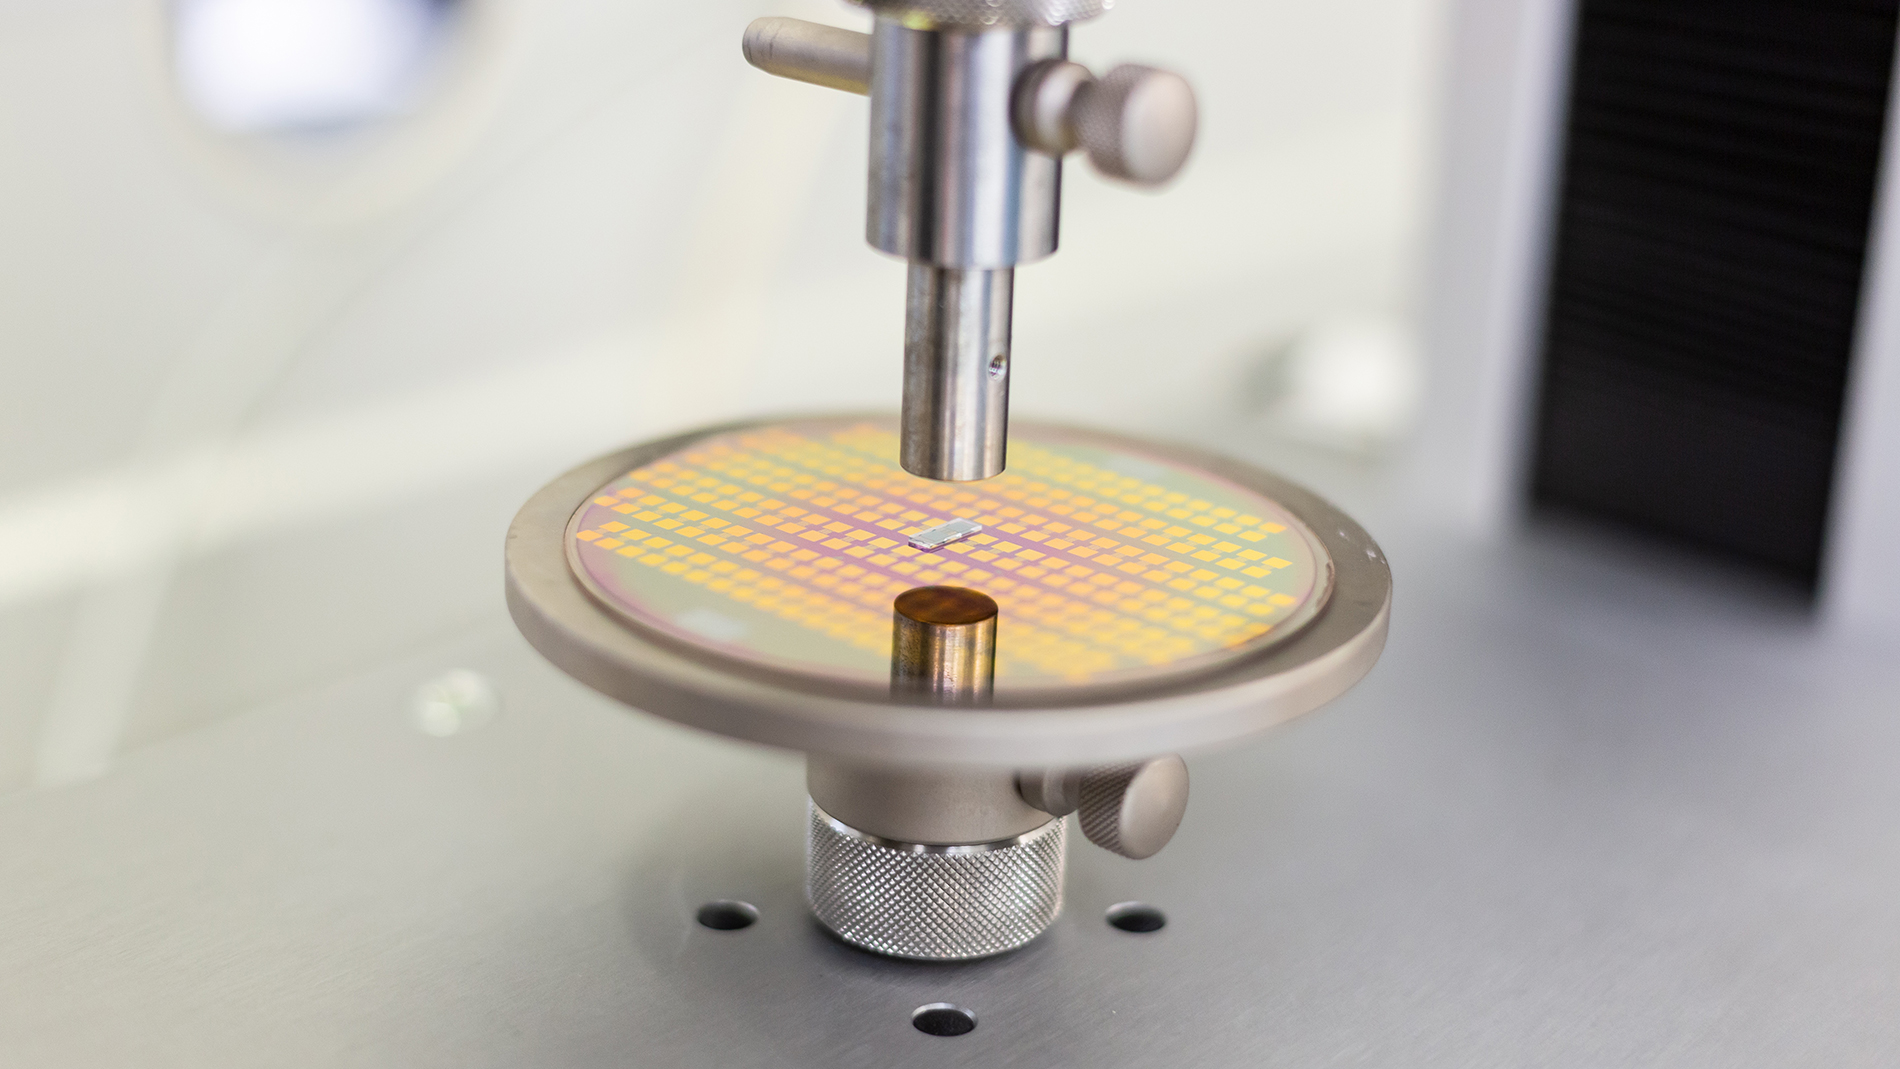 Bild 2: KlettWelding – die Verbindung von zwei mit NanoWiring vorbereiteten Substraten (Bild: NanoWired GmbH)